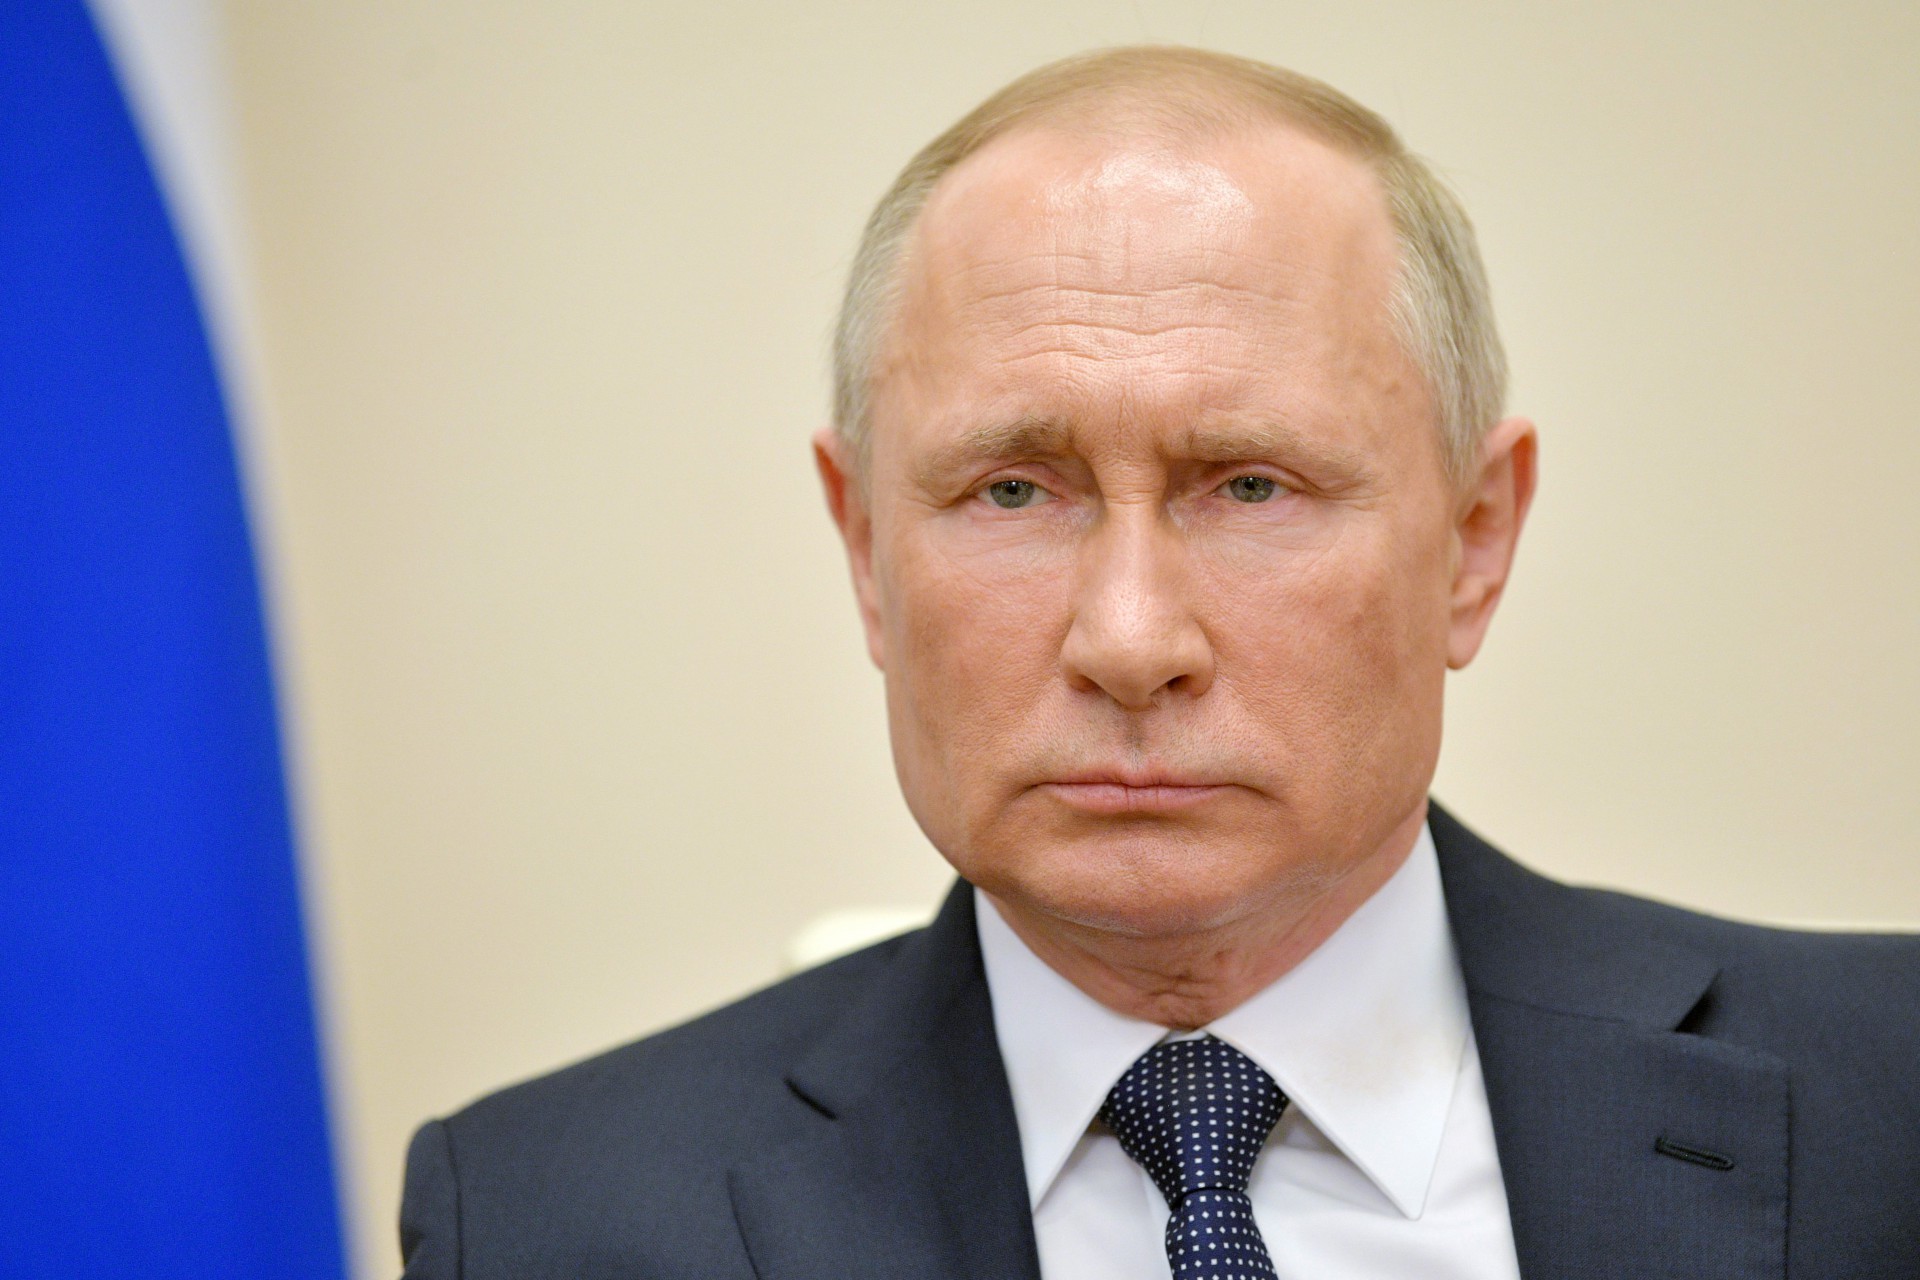 Putin anuncia que dezenas de funcionários próximos testaram positivo para covid